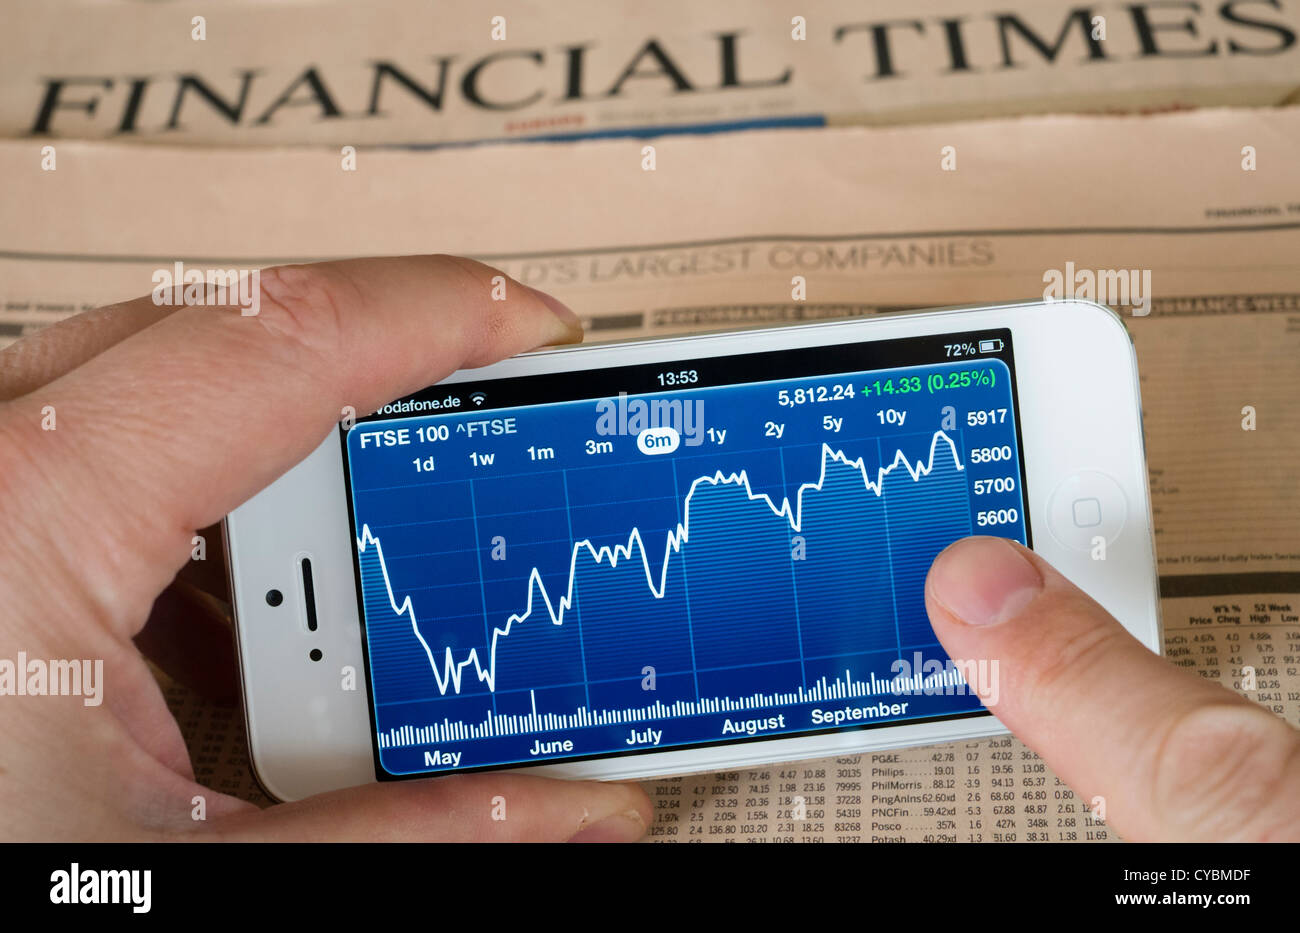 Detail des iPhone 5 Smartphone-Bildschirm zeigt Finanz-app mit Börsendaten Stockfoto